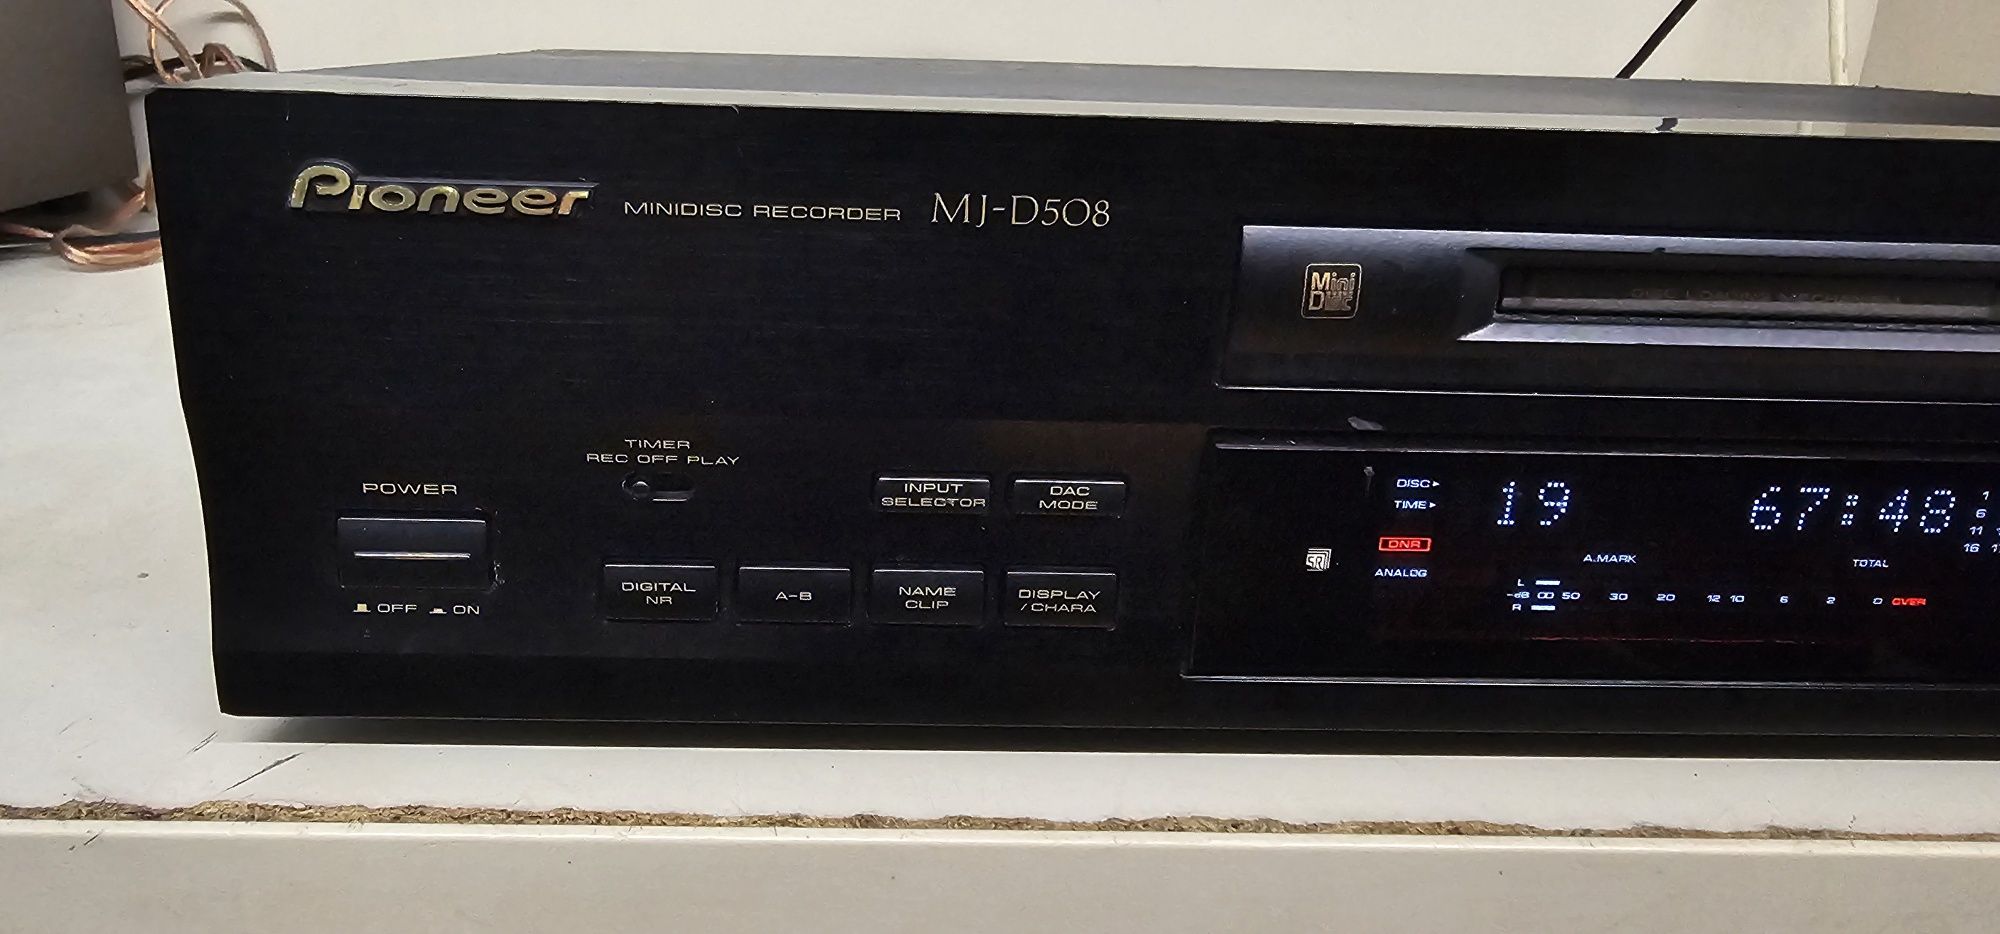 Minidisc recorder,Pioneer MJ D508,vintage